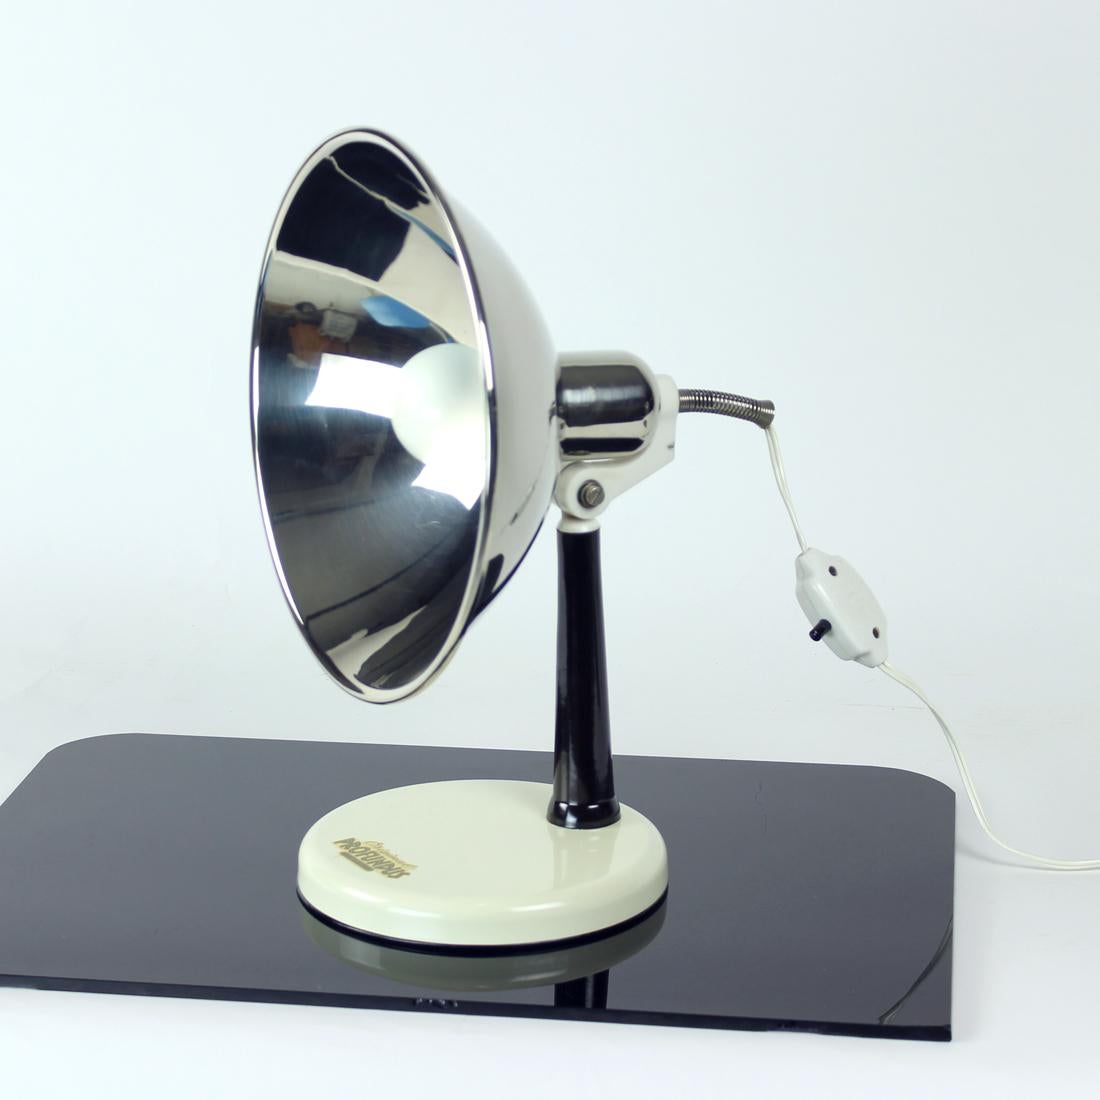 Belle lampe de bureau produite en Autriche dans les années 1950. À l'origine, la lampe était utilisée comme lampe thermique, d'où le bouclier en métal chromé. Il est en excellent état et la marque d'origine est toujours présente. La base est de